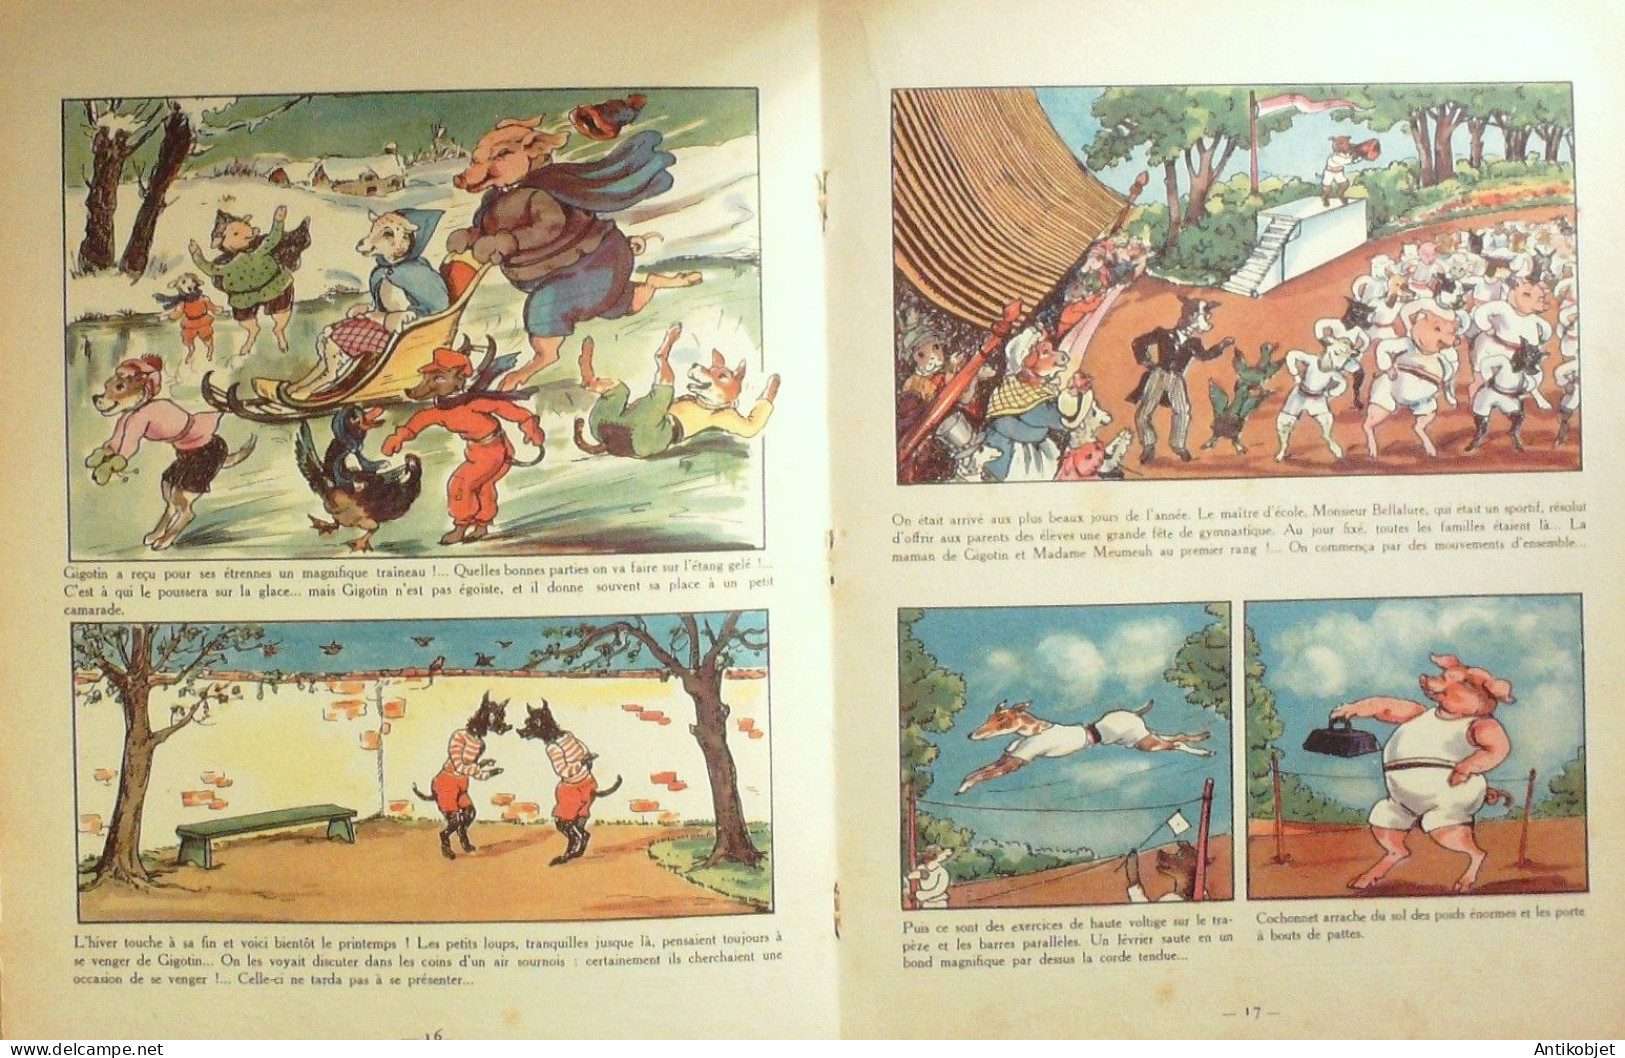 Gigotin Illustrations Mateja Eo 1948 - 5. Zeit Der Weltkriege